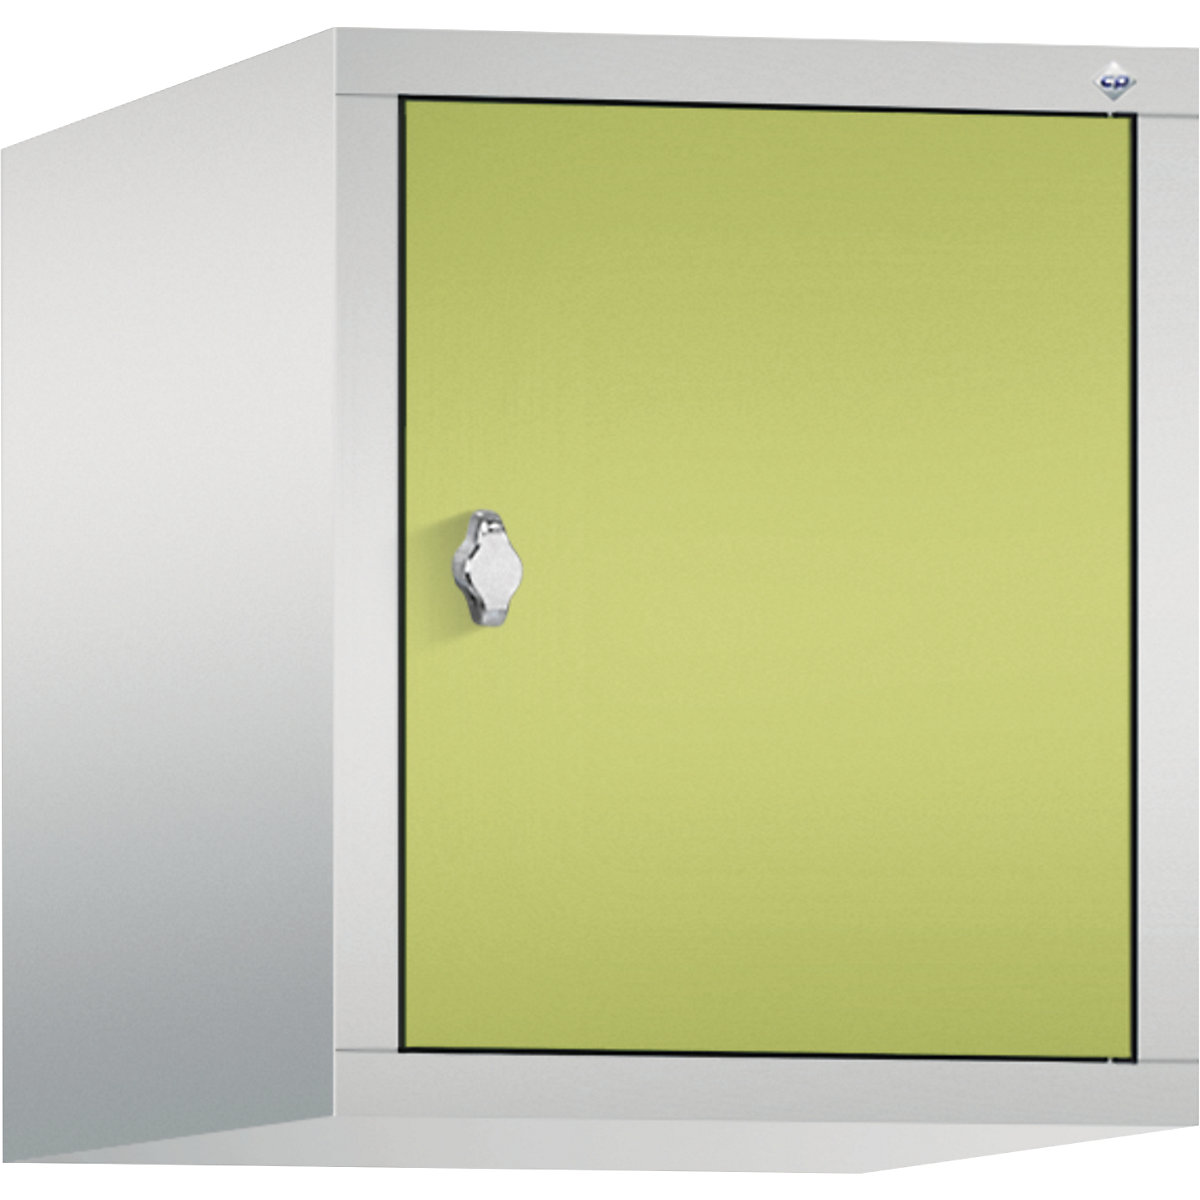 C+P – Altillo CLASSIC, 1 compartimento, anchura de compartimento 400 mm, gris luminoso / verde pistacho